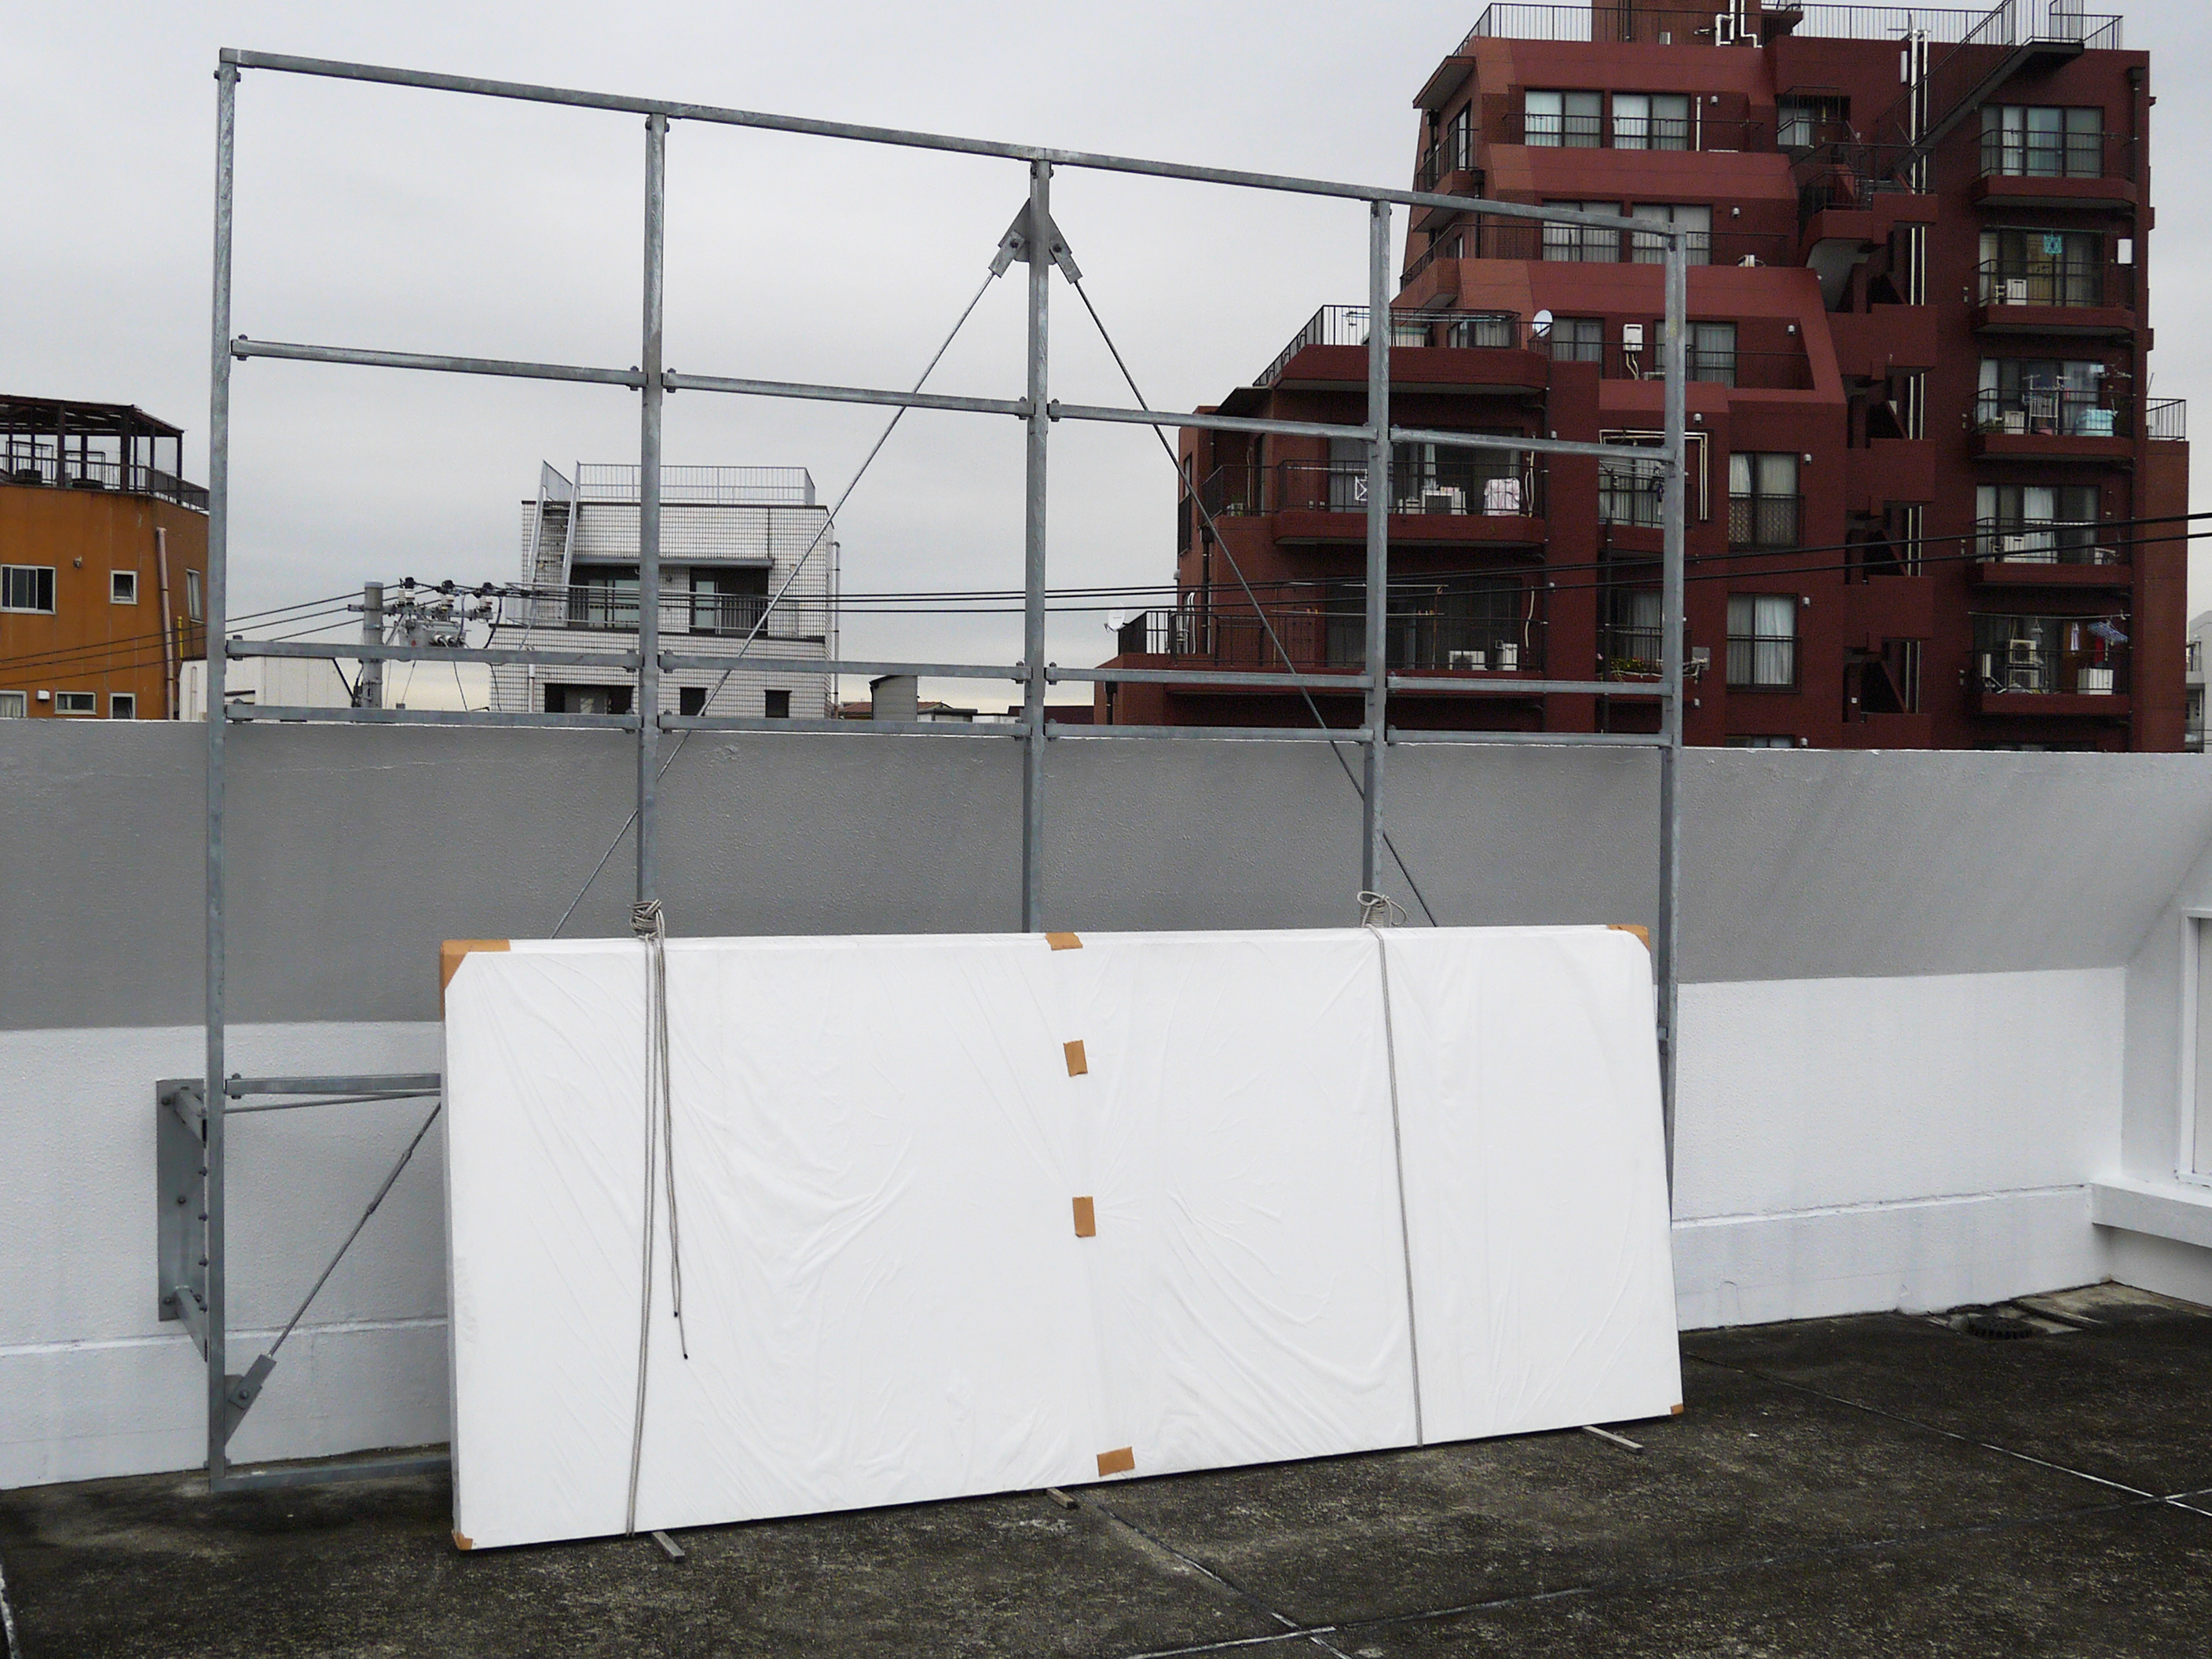 白パネルを張ったり、雨を降らしたり、屋上だからできることたくさん！「STUDIO ON (Roof)」